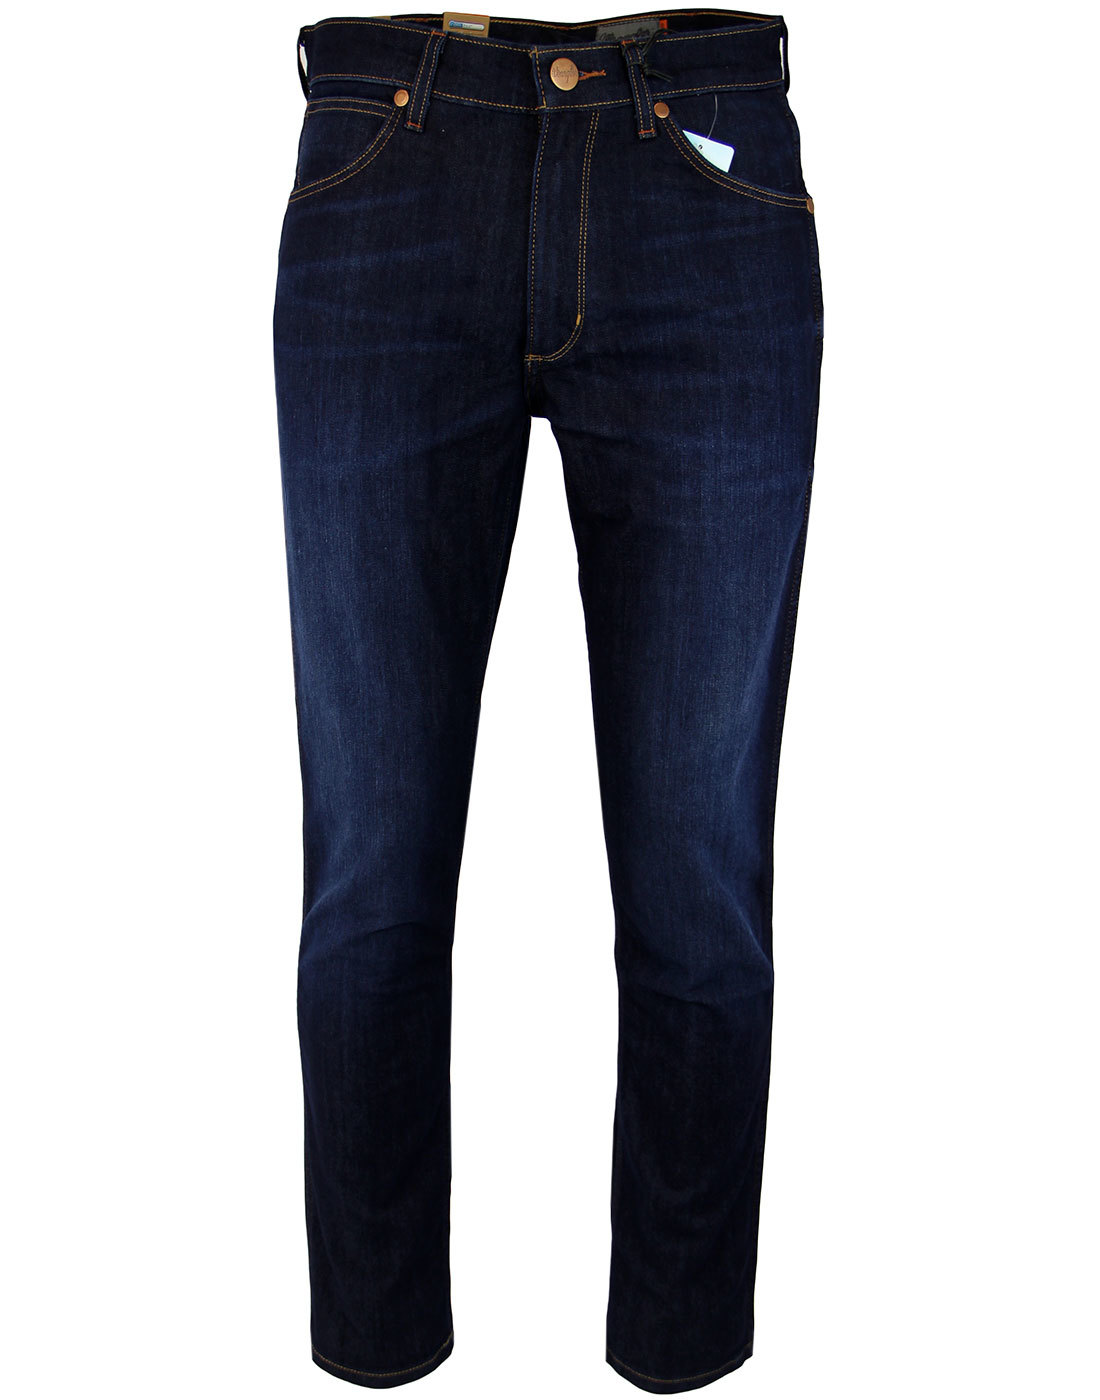 WRANGLER Greensboro Retro Mod Men's Regular Tapered Denim Jeans